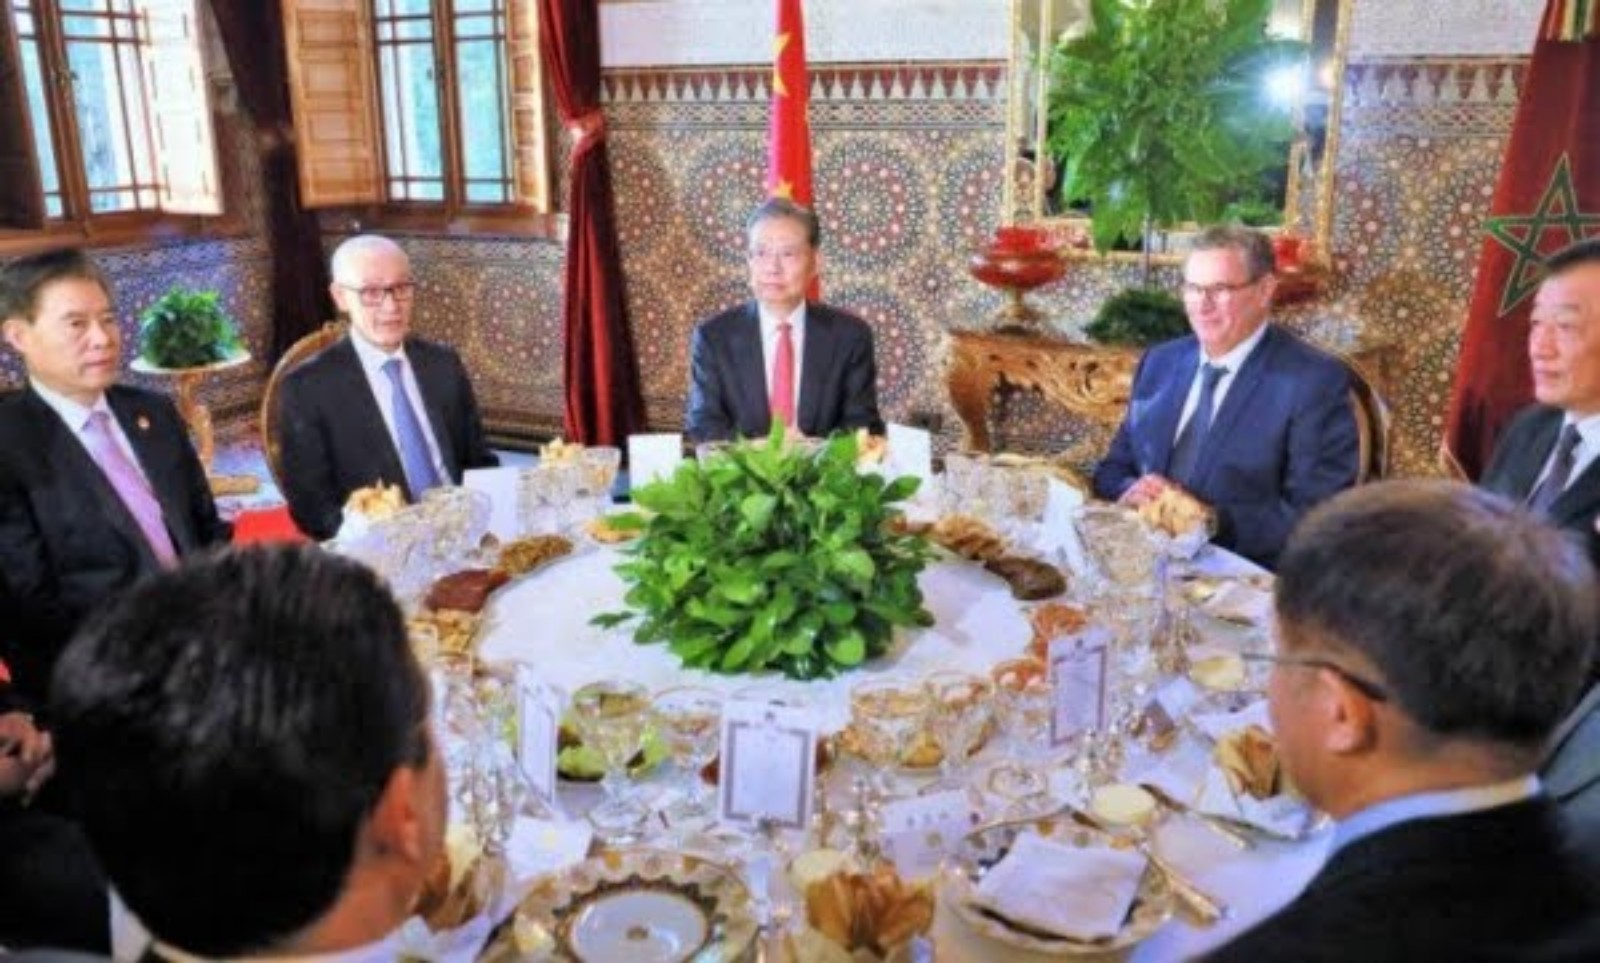 الملك محمد السادس يقيم مأدبة عشاء على شرف رئيس اللجنة الدائمة للجمعية الشعبية الوطنية للصين والوفد المرافق له